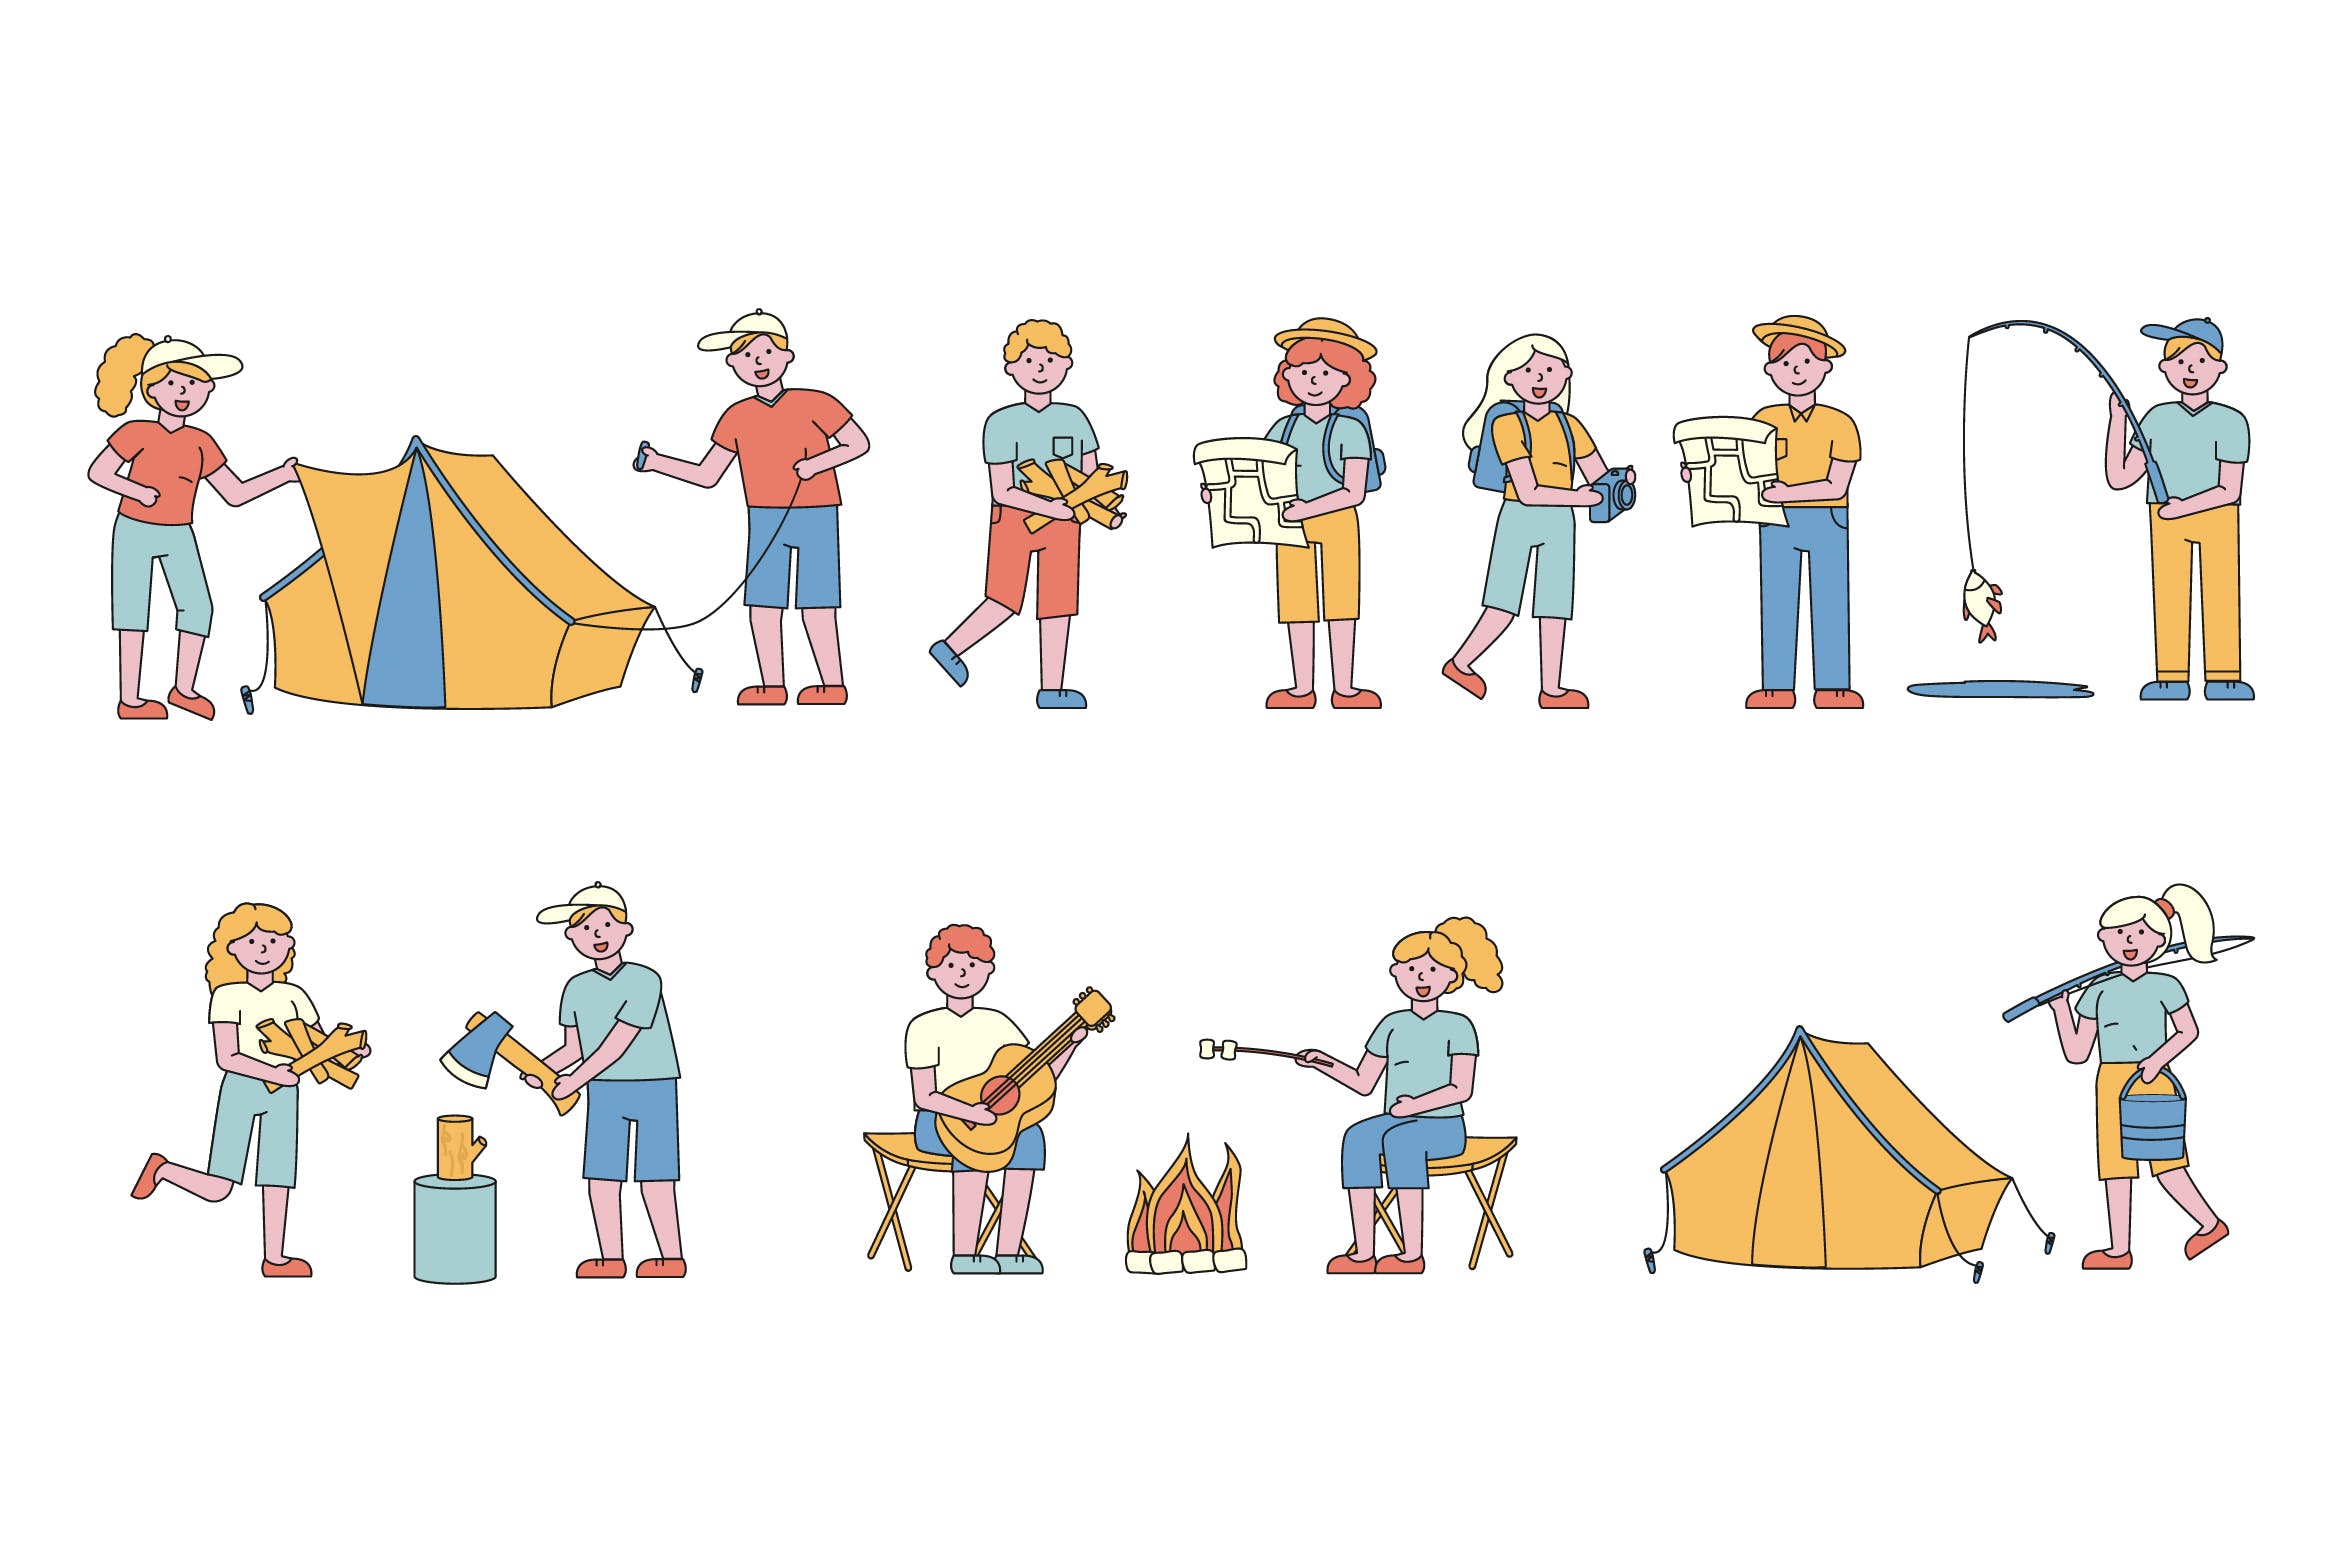 野营户外运动主题人物形象线条艺术矢量插画素材中国精选素材 Campers Lineart People Character Collection插图